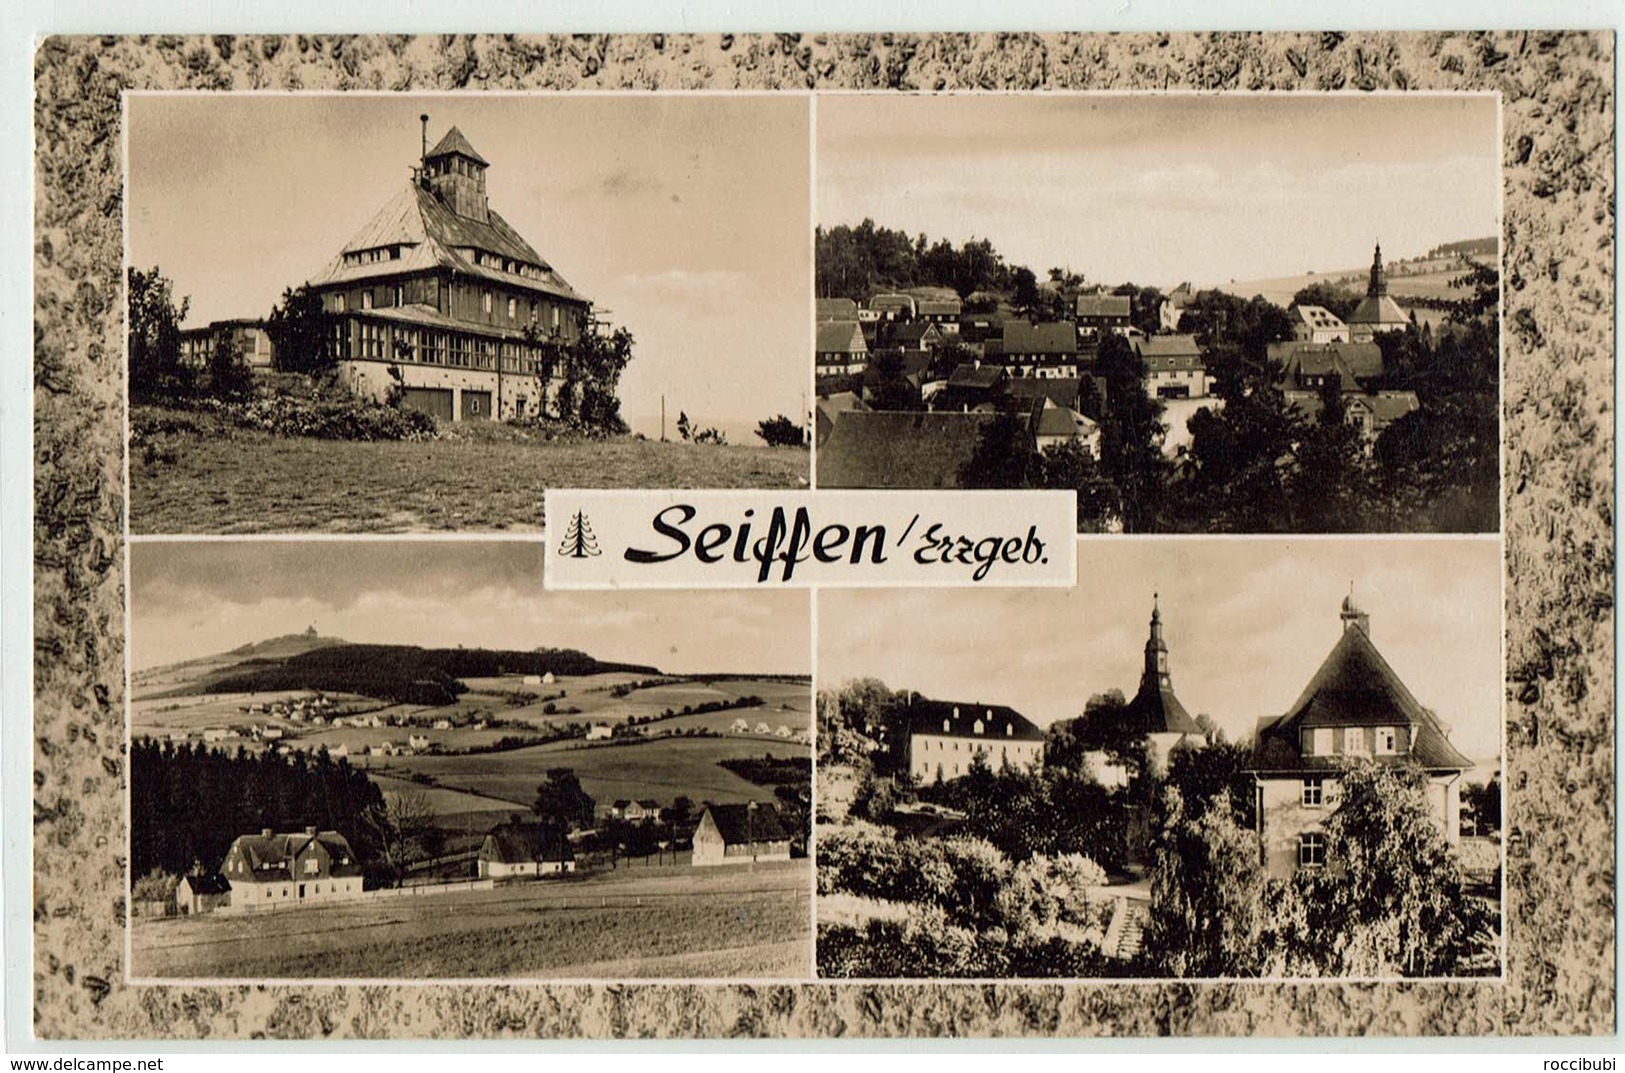 Seiffen, Erzgebirge - Seiffen